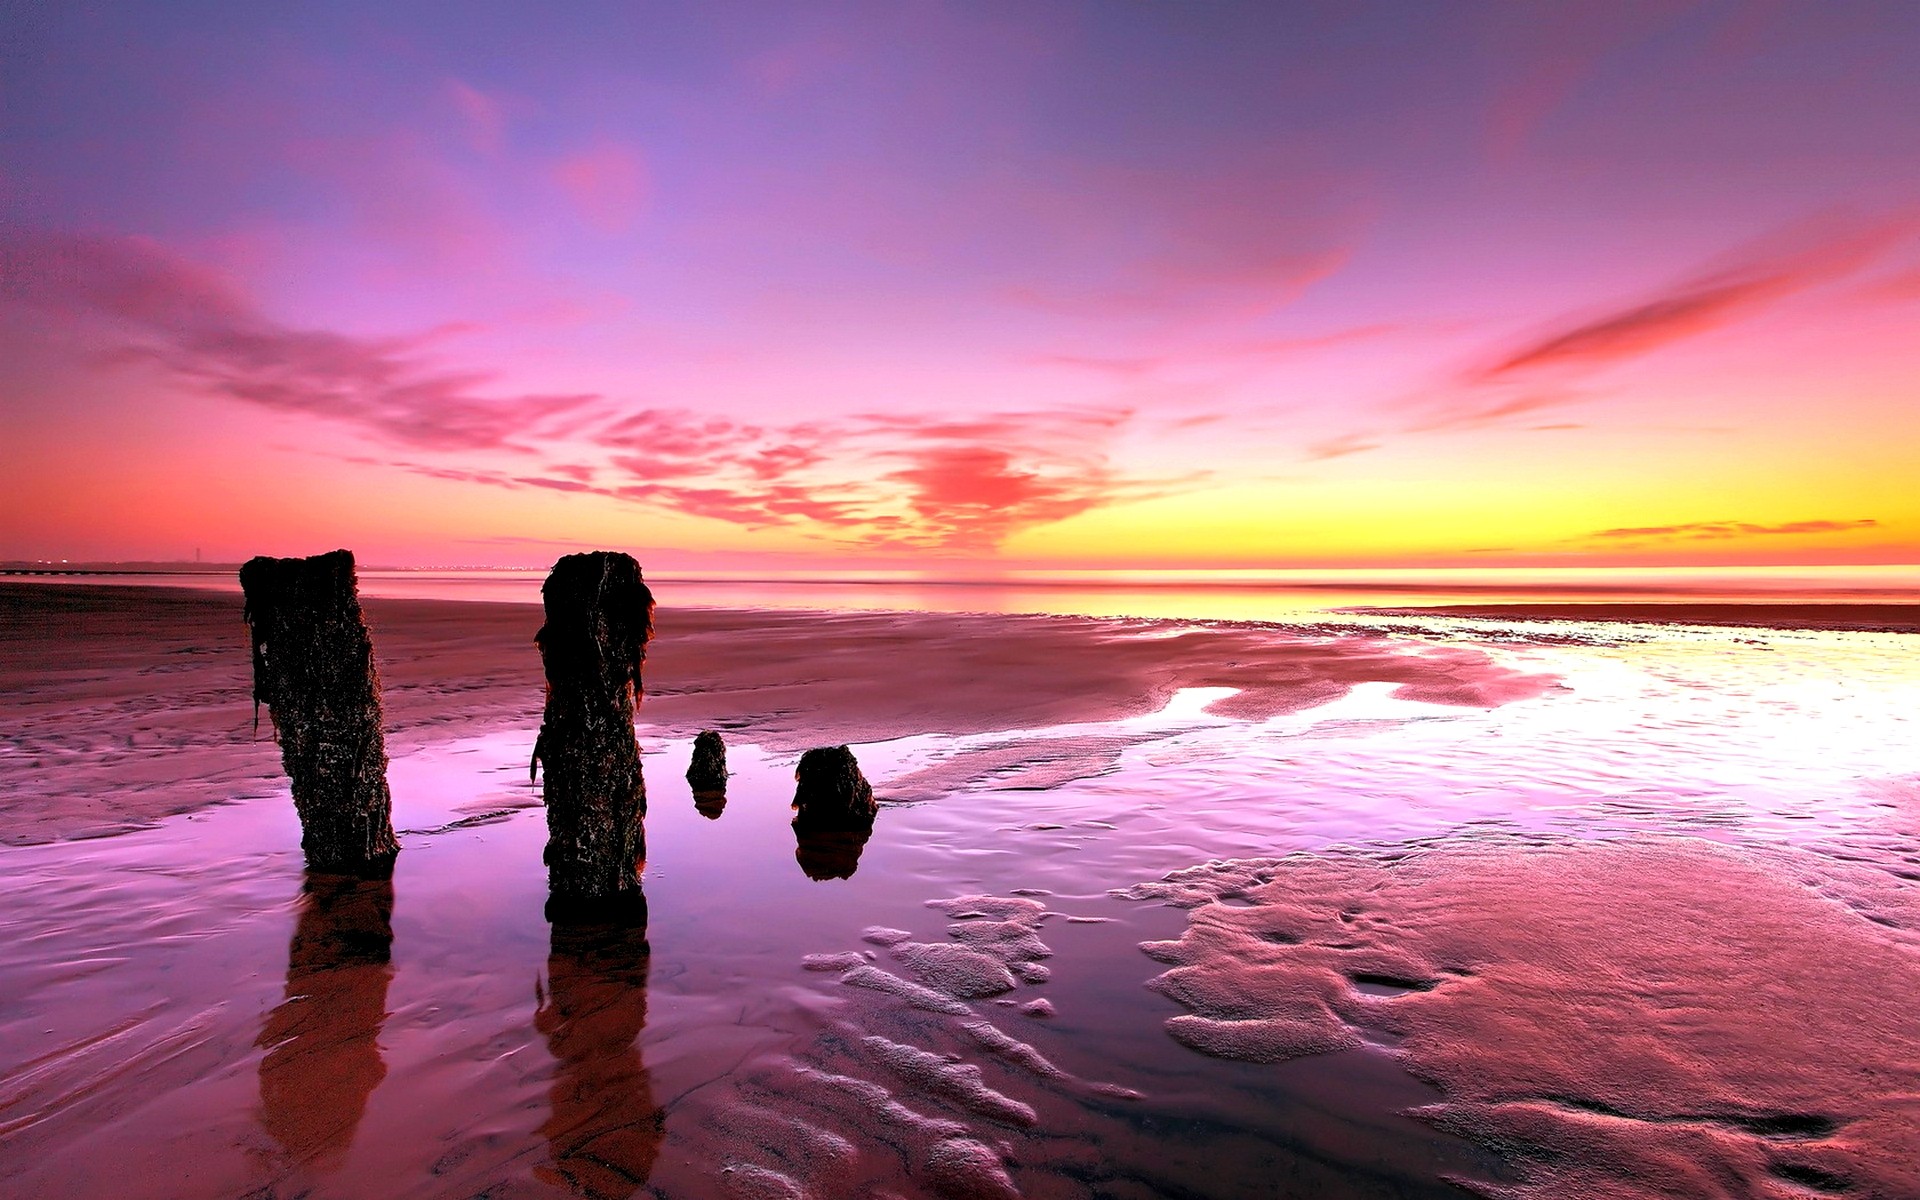 Ocean Stumps Sunset Dusk Beach Wallpaper For Iphone 5 Beaches ...